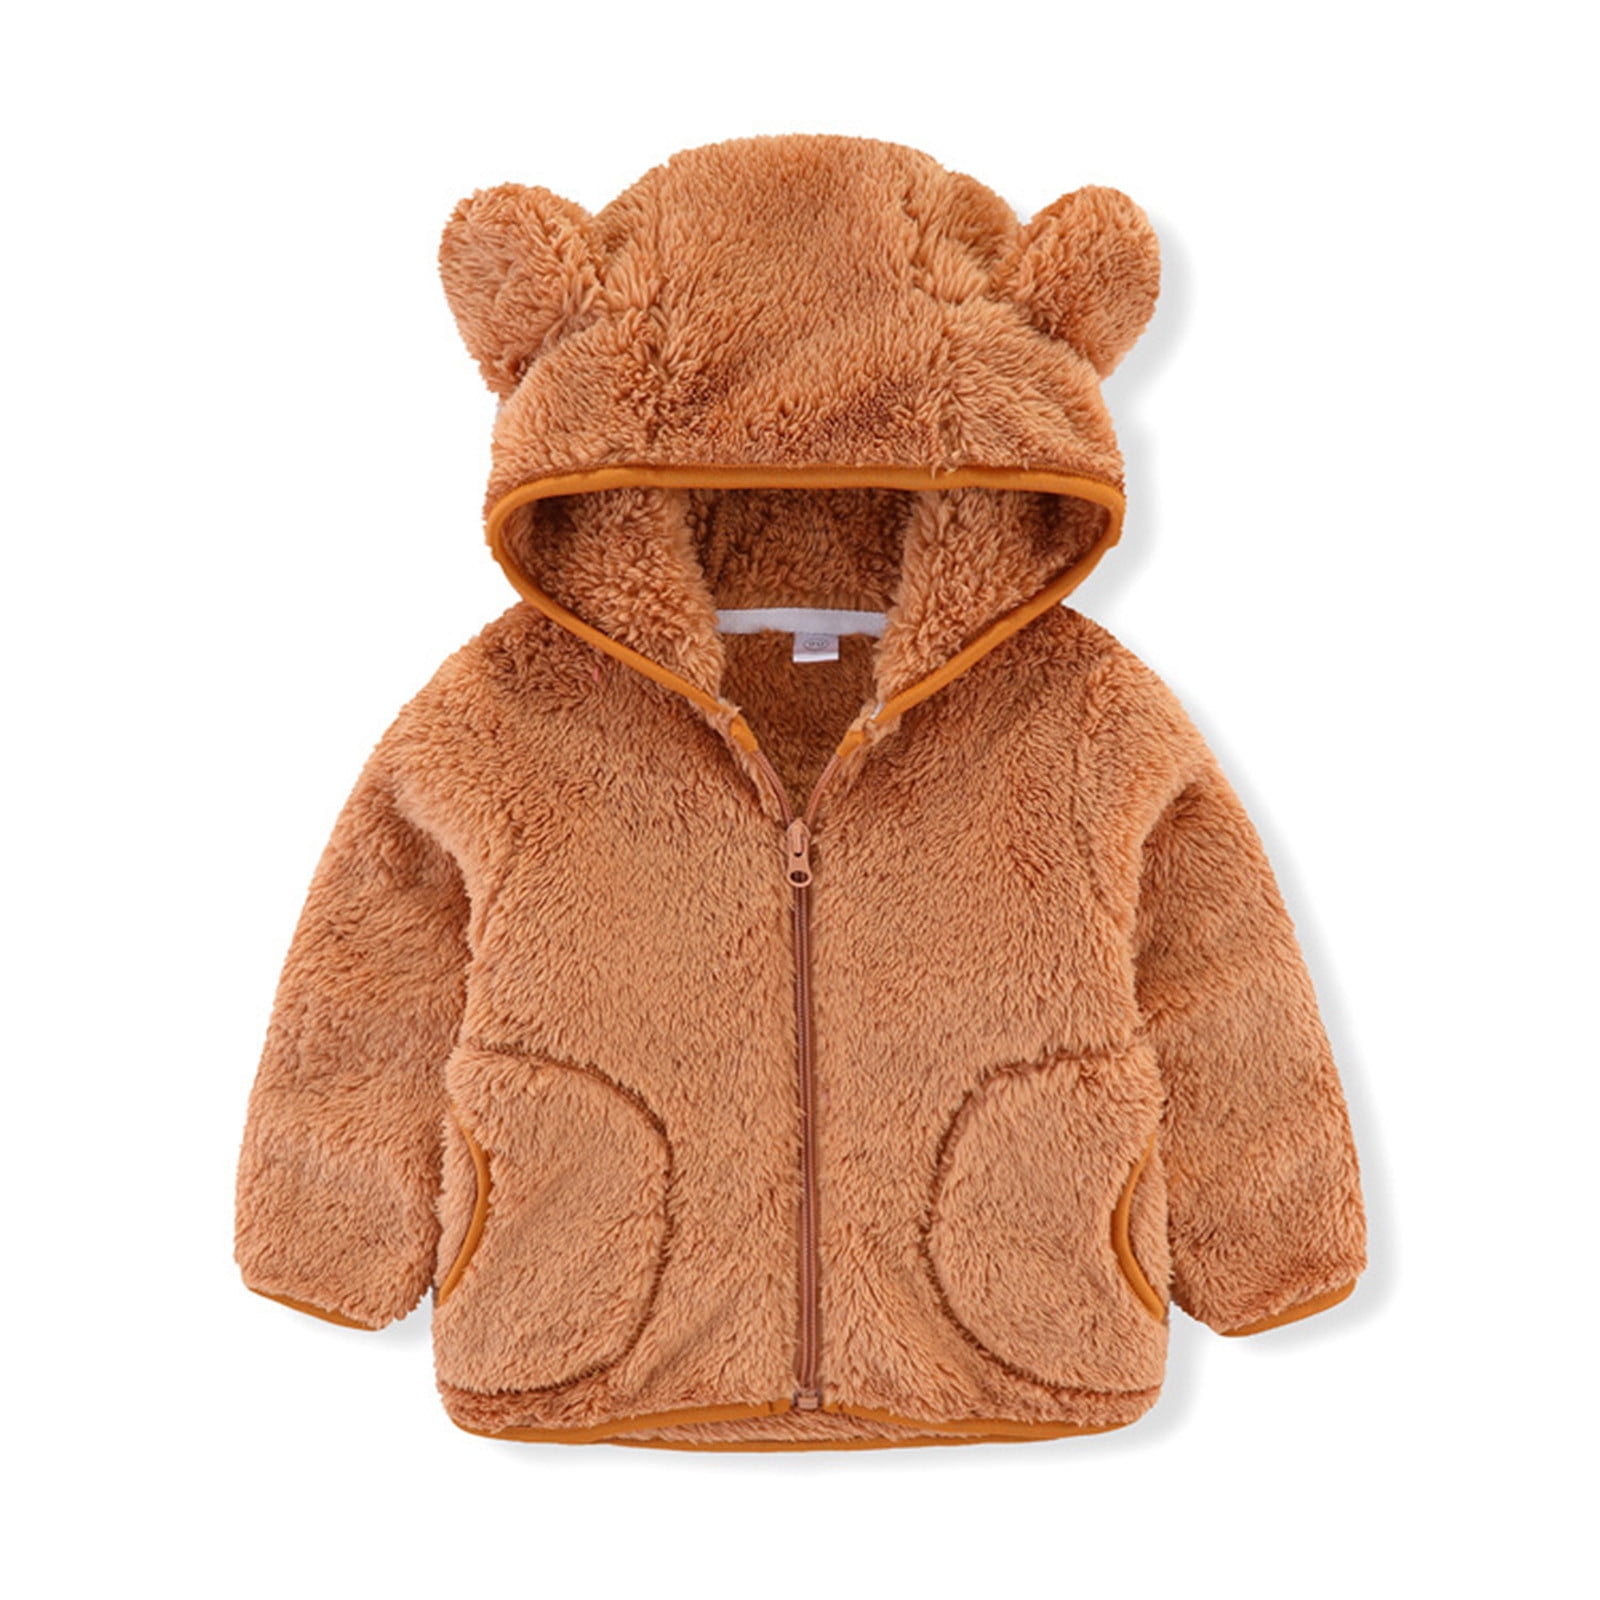 Toddler Girls Outerwear Faux Fur Hooded Jacket Winter Warm Coat Cute Ears Tops 